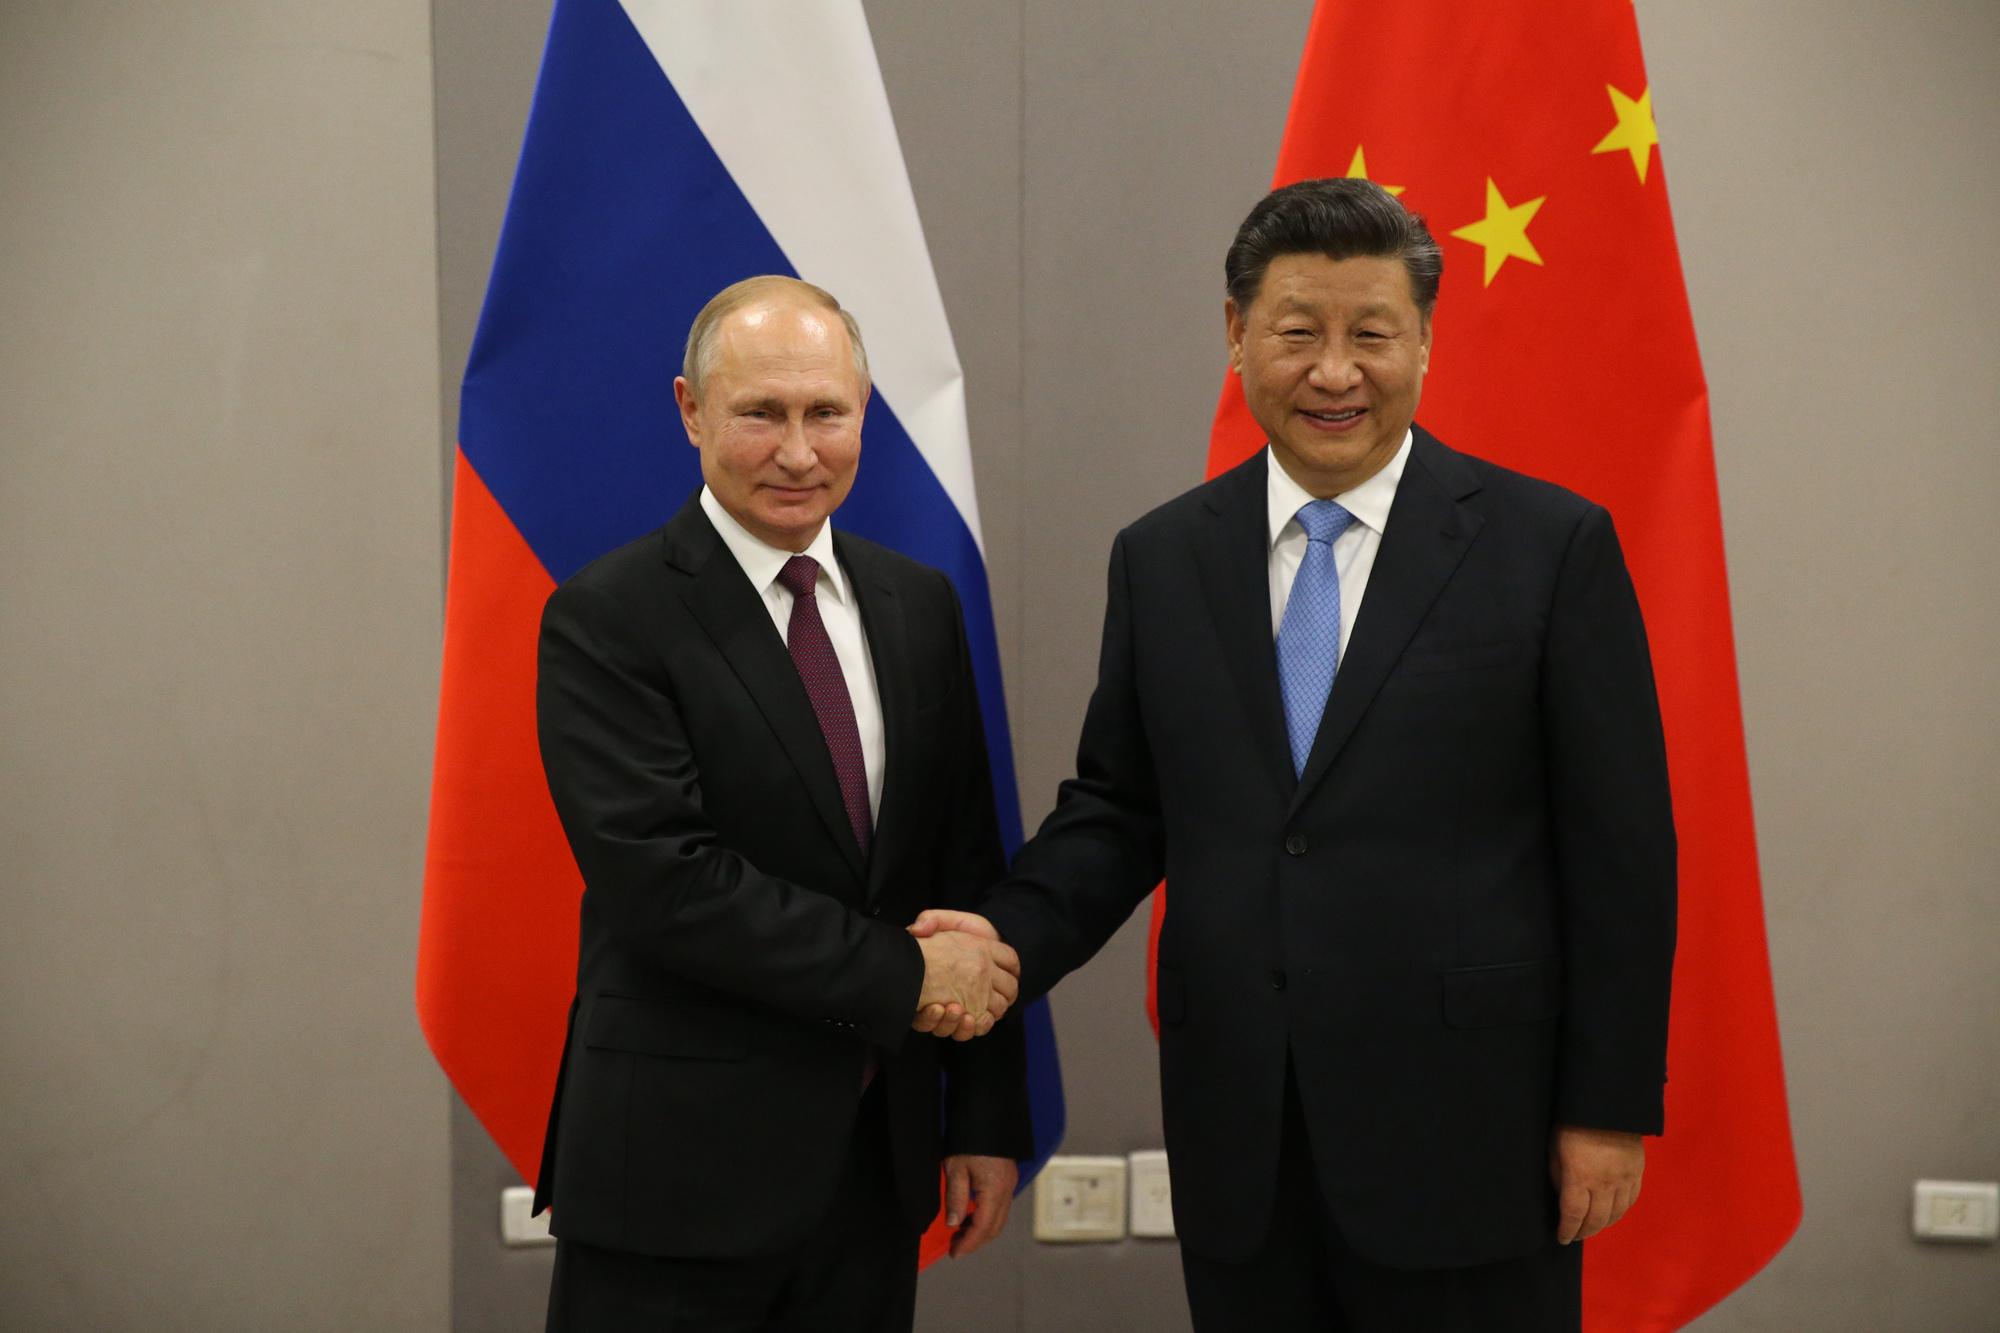 La Russie aurait demandé de l'aide financière et militaire à la Chine